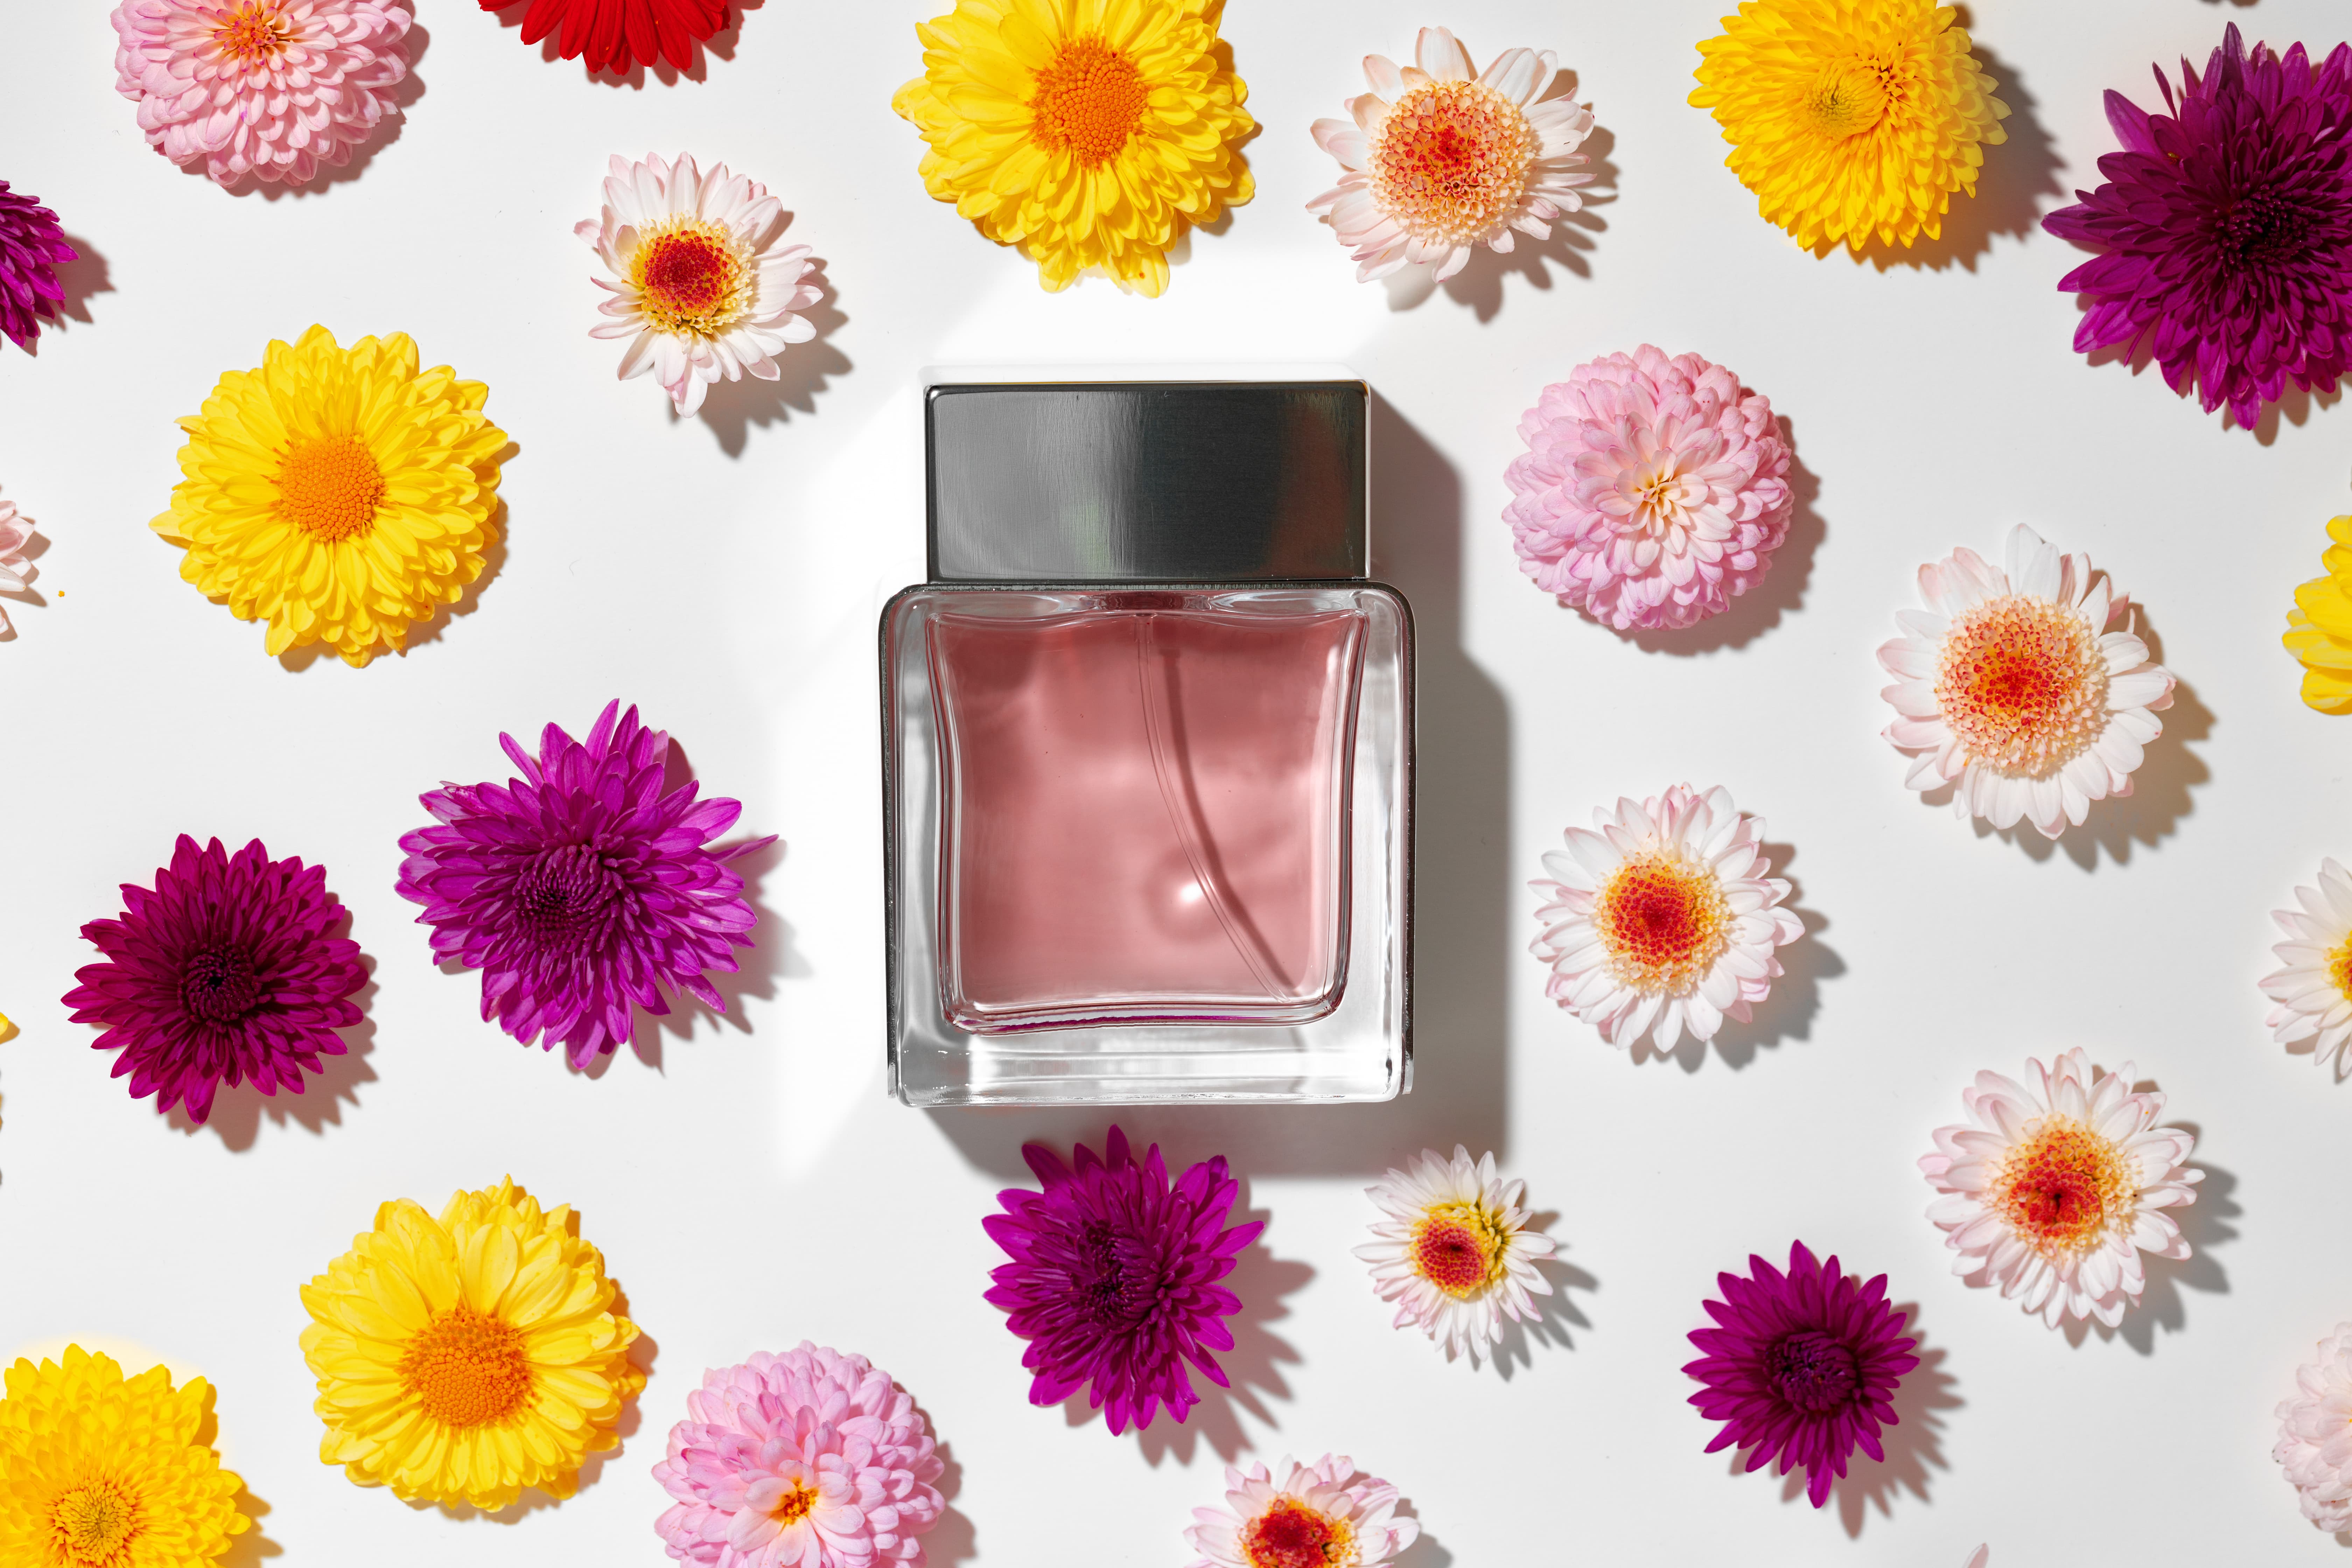 perfume-bottle-for-women-in-flower-buds-2021-09-03-04-16-55-utc (1).jpg